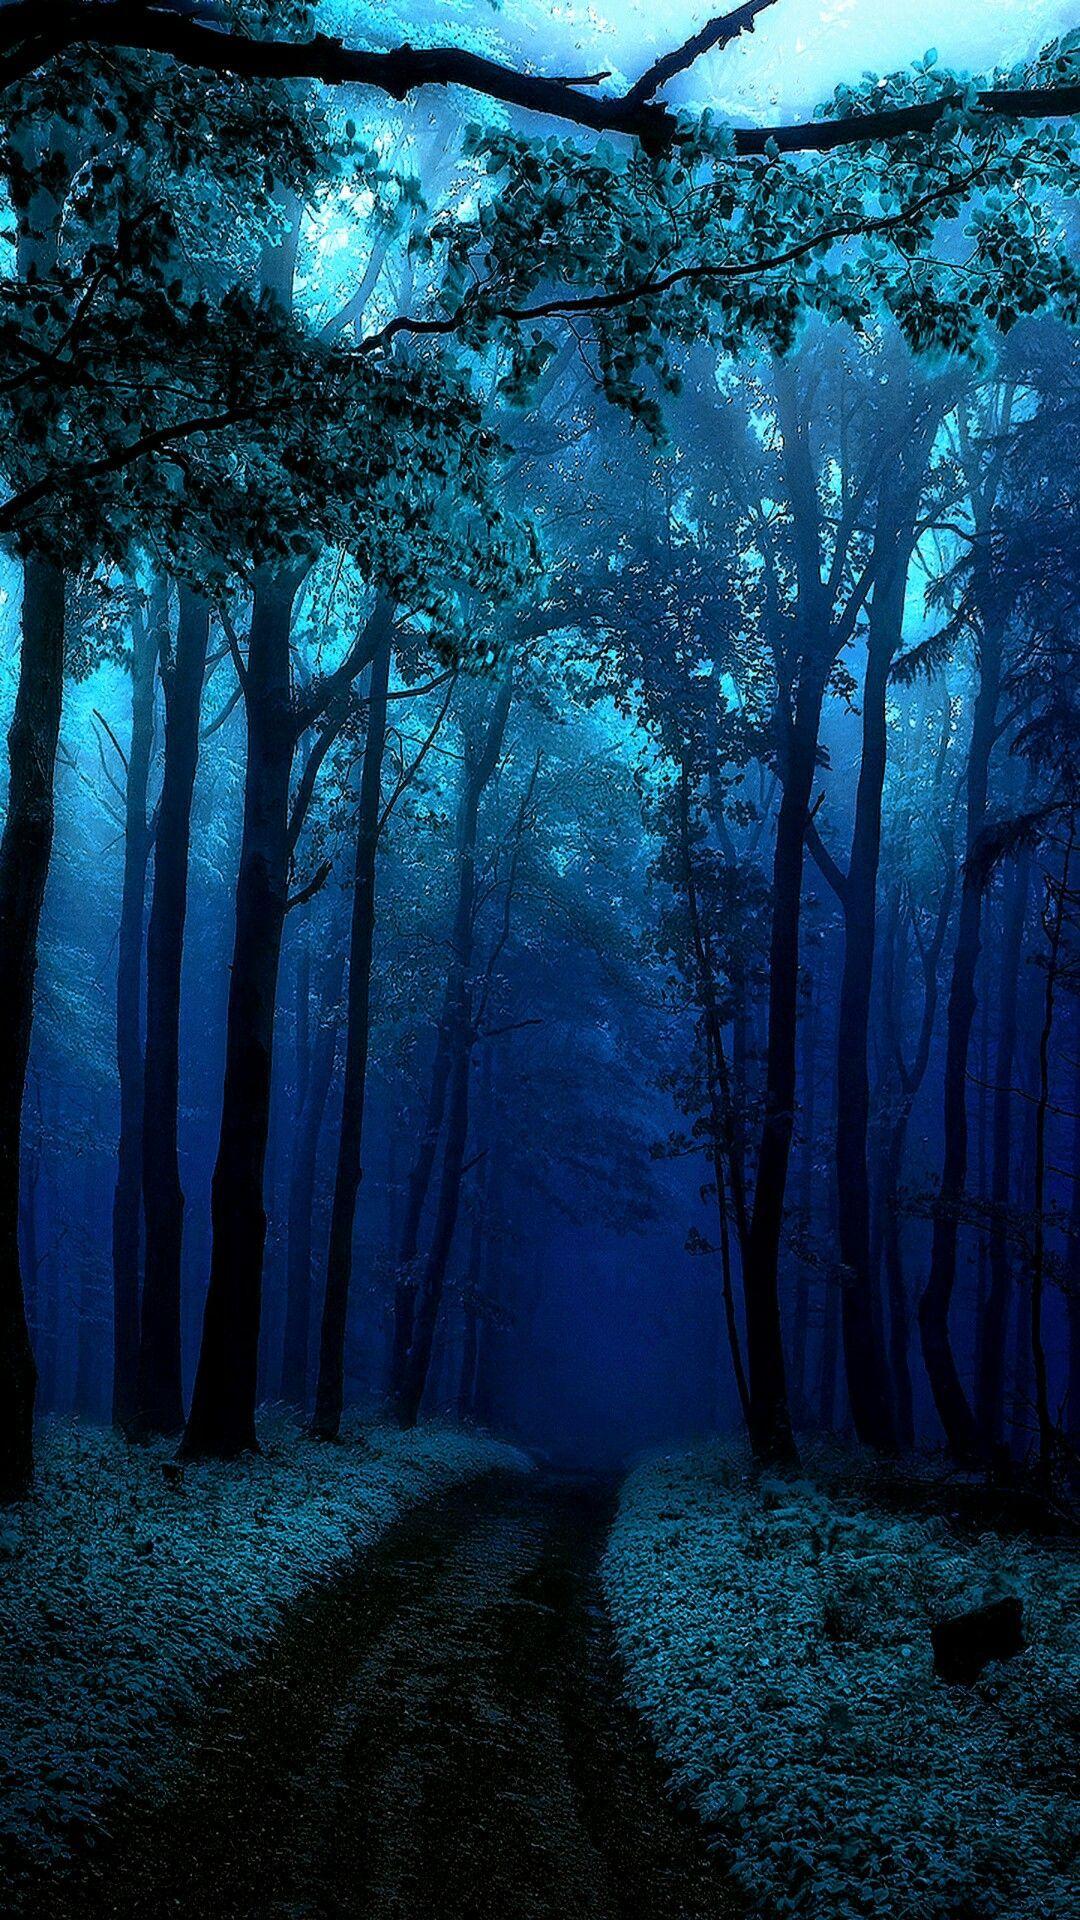 Hình nền cây xanh lam sẽ làm bạn cảm thấy bình yên và thư thái. Với tông màu xanh lá nhạt kết hợp với ánh sáng lấp lánh, hình ảnh này tỏa ra một sức thu hút đặc biệt. Hãy để tâm hồn được thư giãn và cảm nhận vẻ đẹp của thiên nhiên.